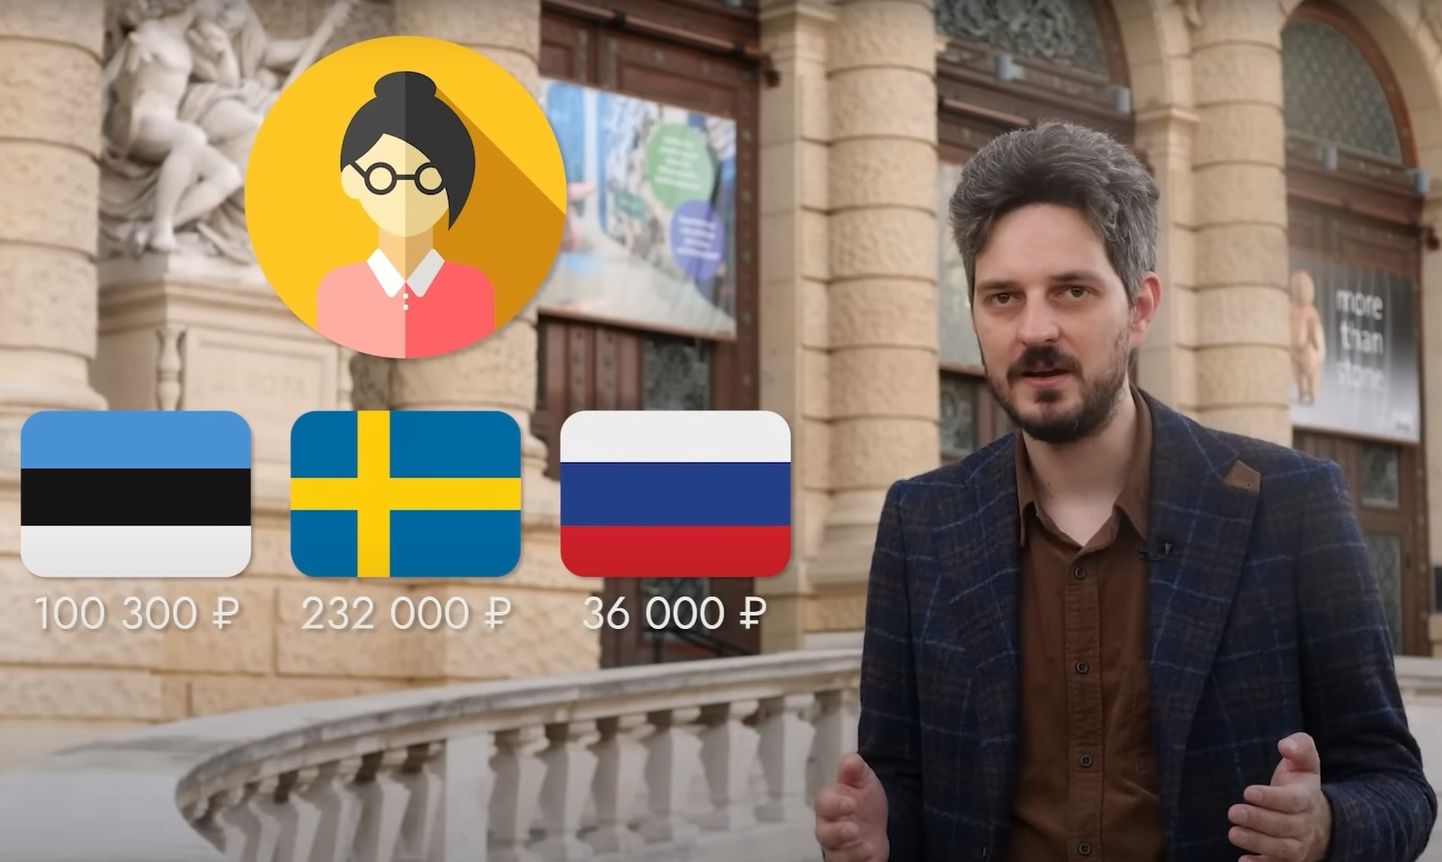 На канале Максима Каца вышло новое видео, в котором сравнивают уровень жизни в Эстонии, Швеции и России.